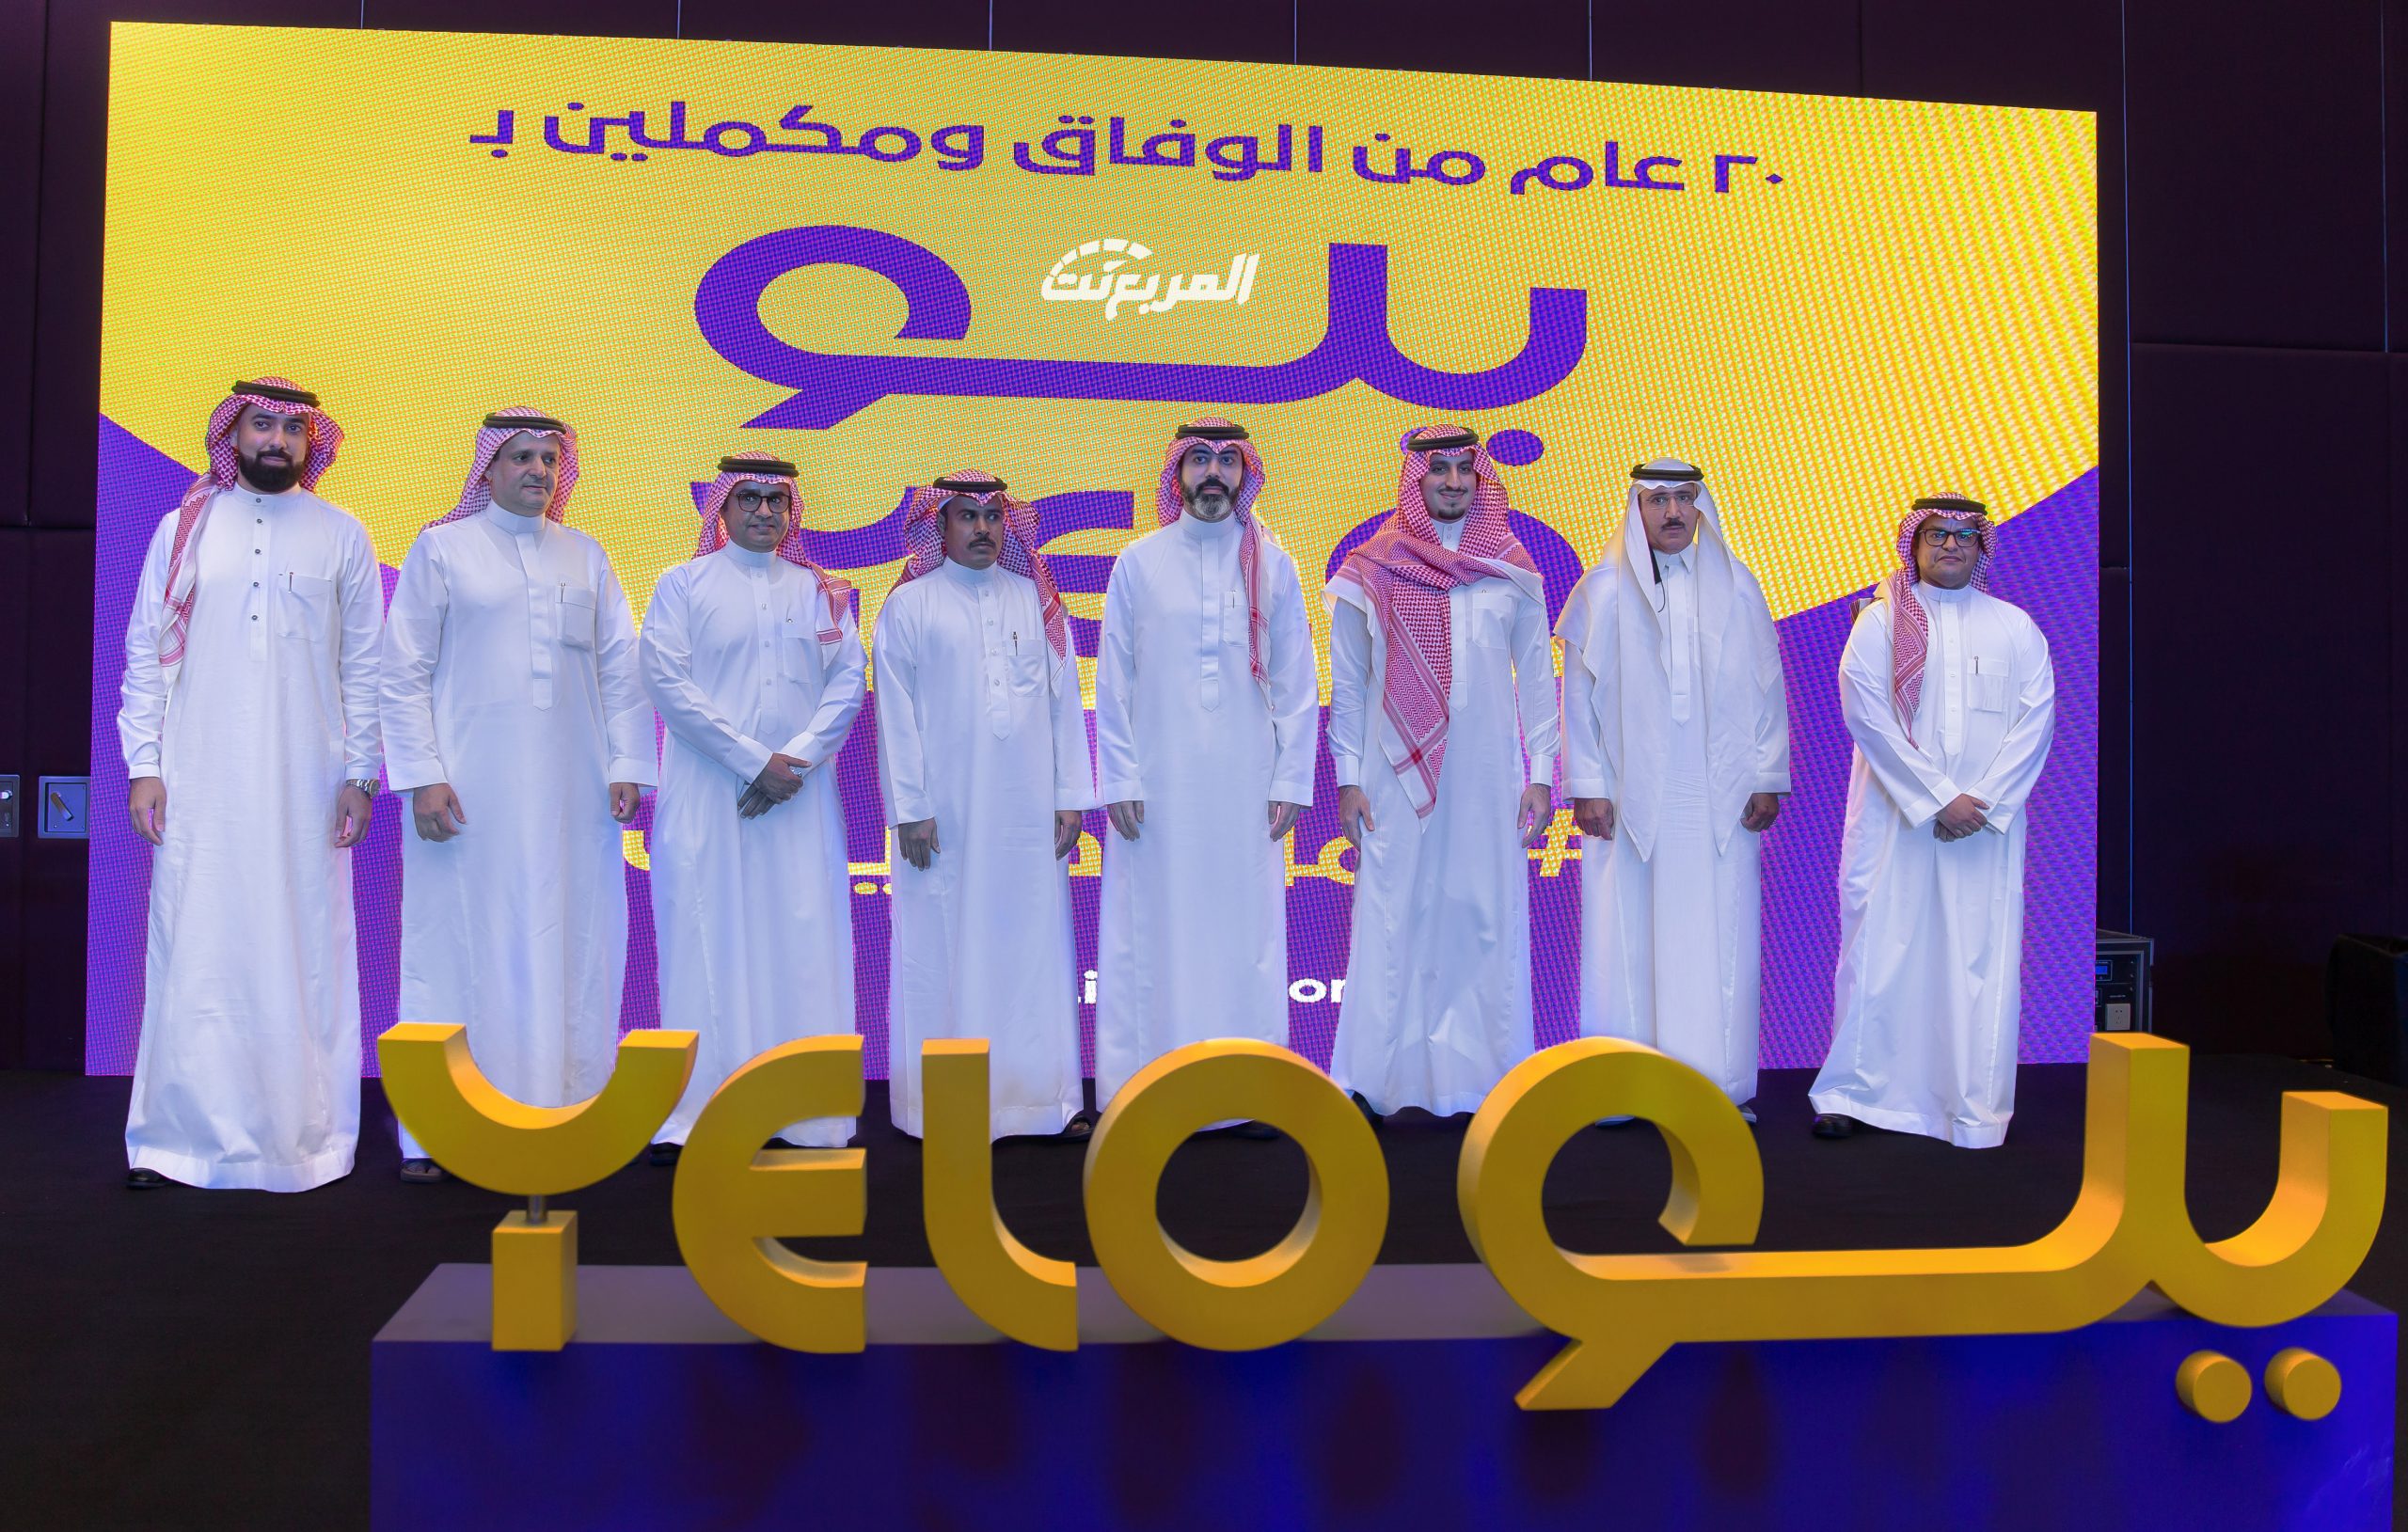 صور من حفل تدشين هوية الوفاق الجديدة ( يلو )